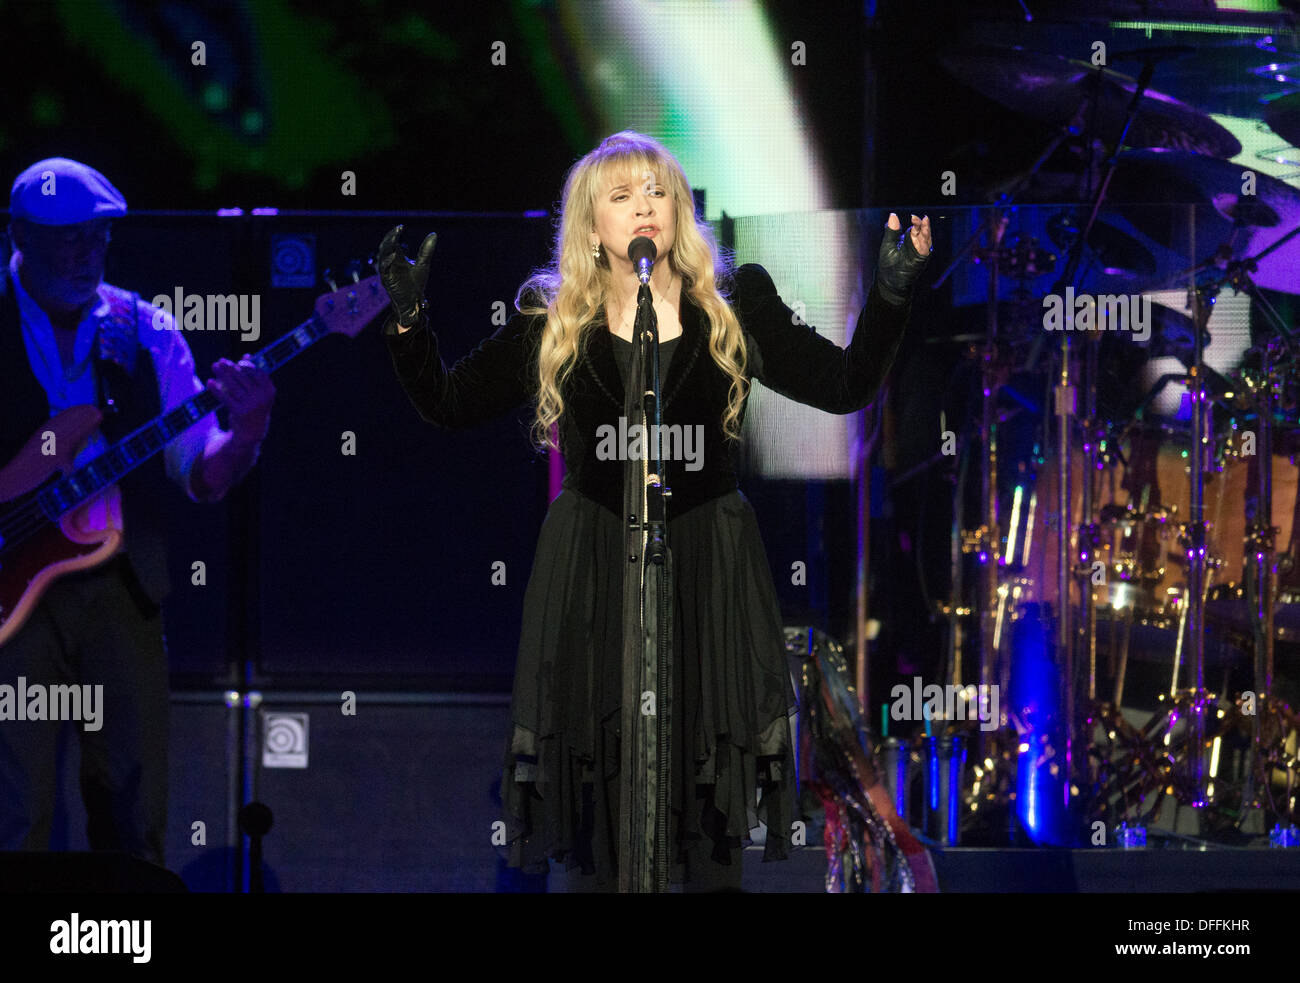 Glasgow, Vereinigtes Königreich. 3. Oktober 2013. Stevie Nicks von Fleetwood Mac ausführen auf der Bühne im Hydro am 3. Oktober 2013 in Glasgow, UK-Credit: Sam Kovak/Alamy Live News Stockfoto